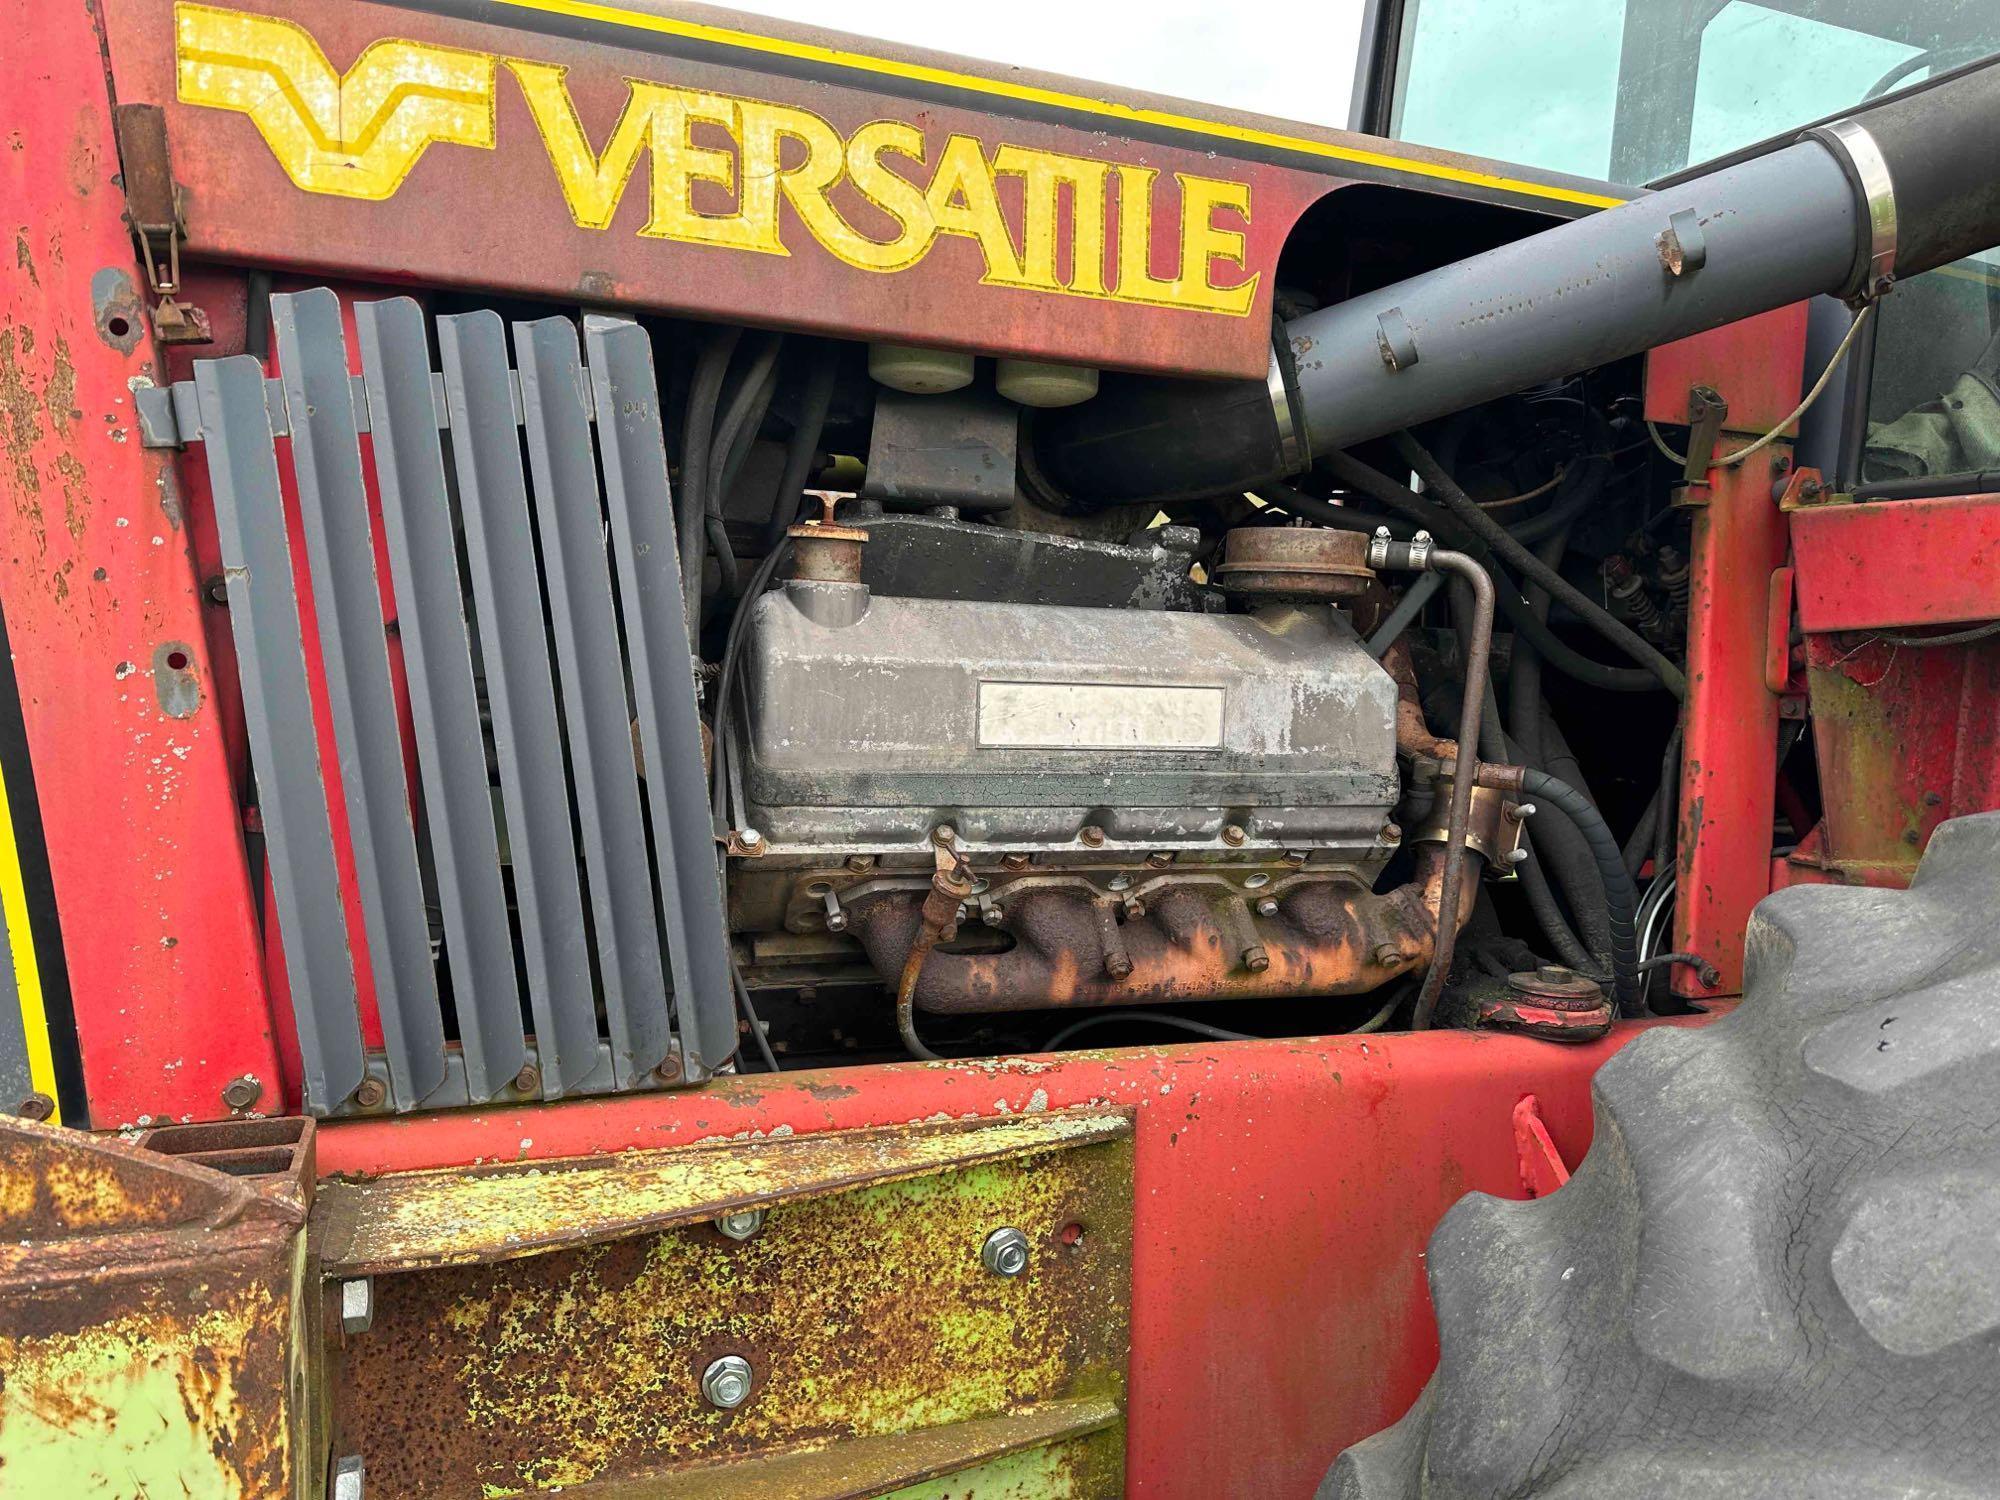 Versatile 555 Tractor